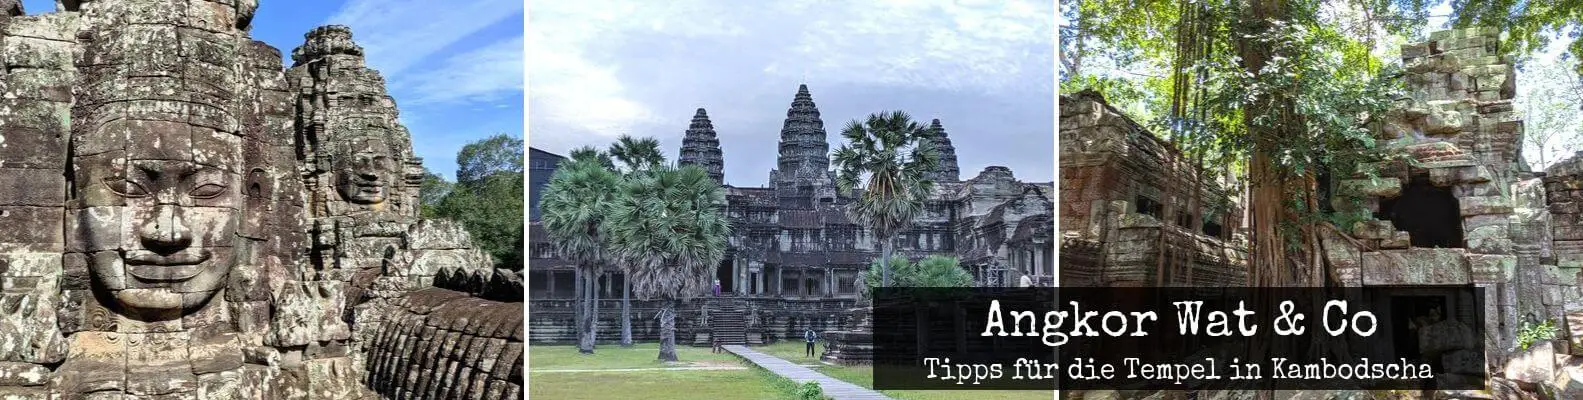 Angkor Wat – Infos, Tickets und Tipps für die Tempel in Kambodscha